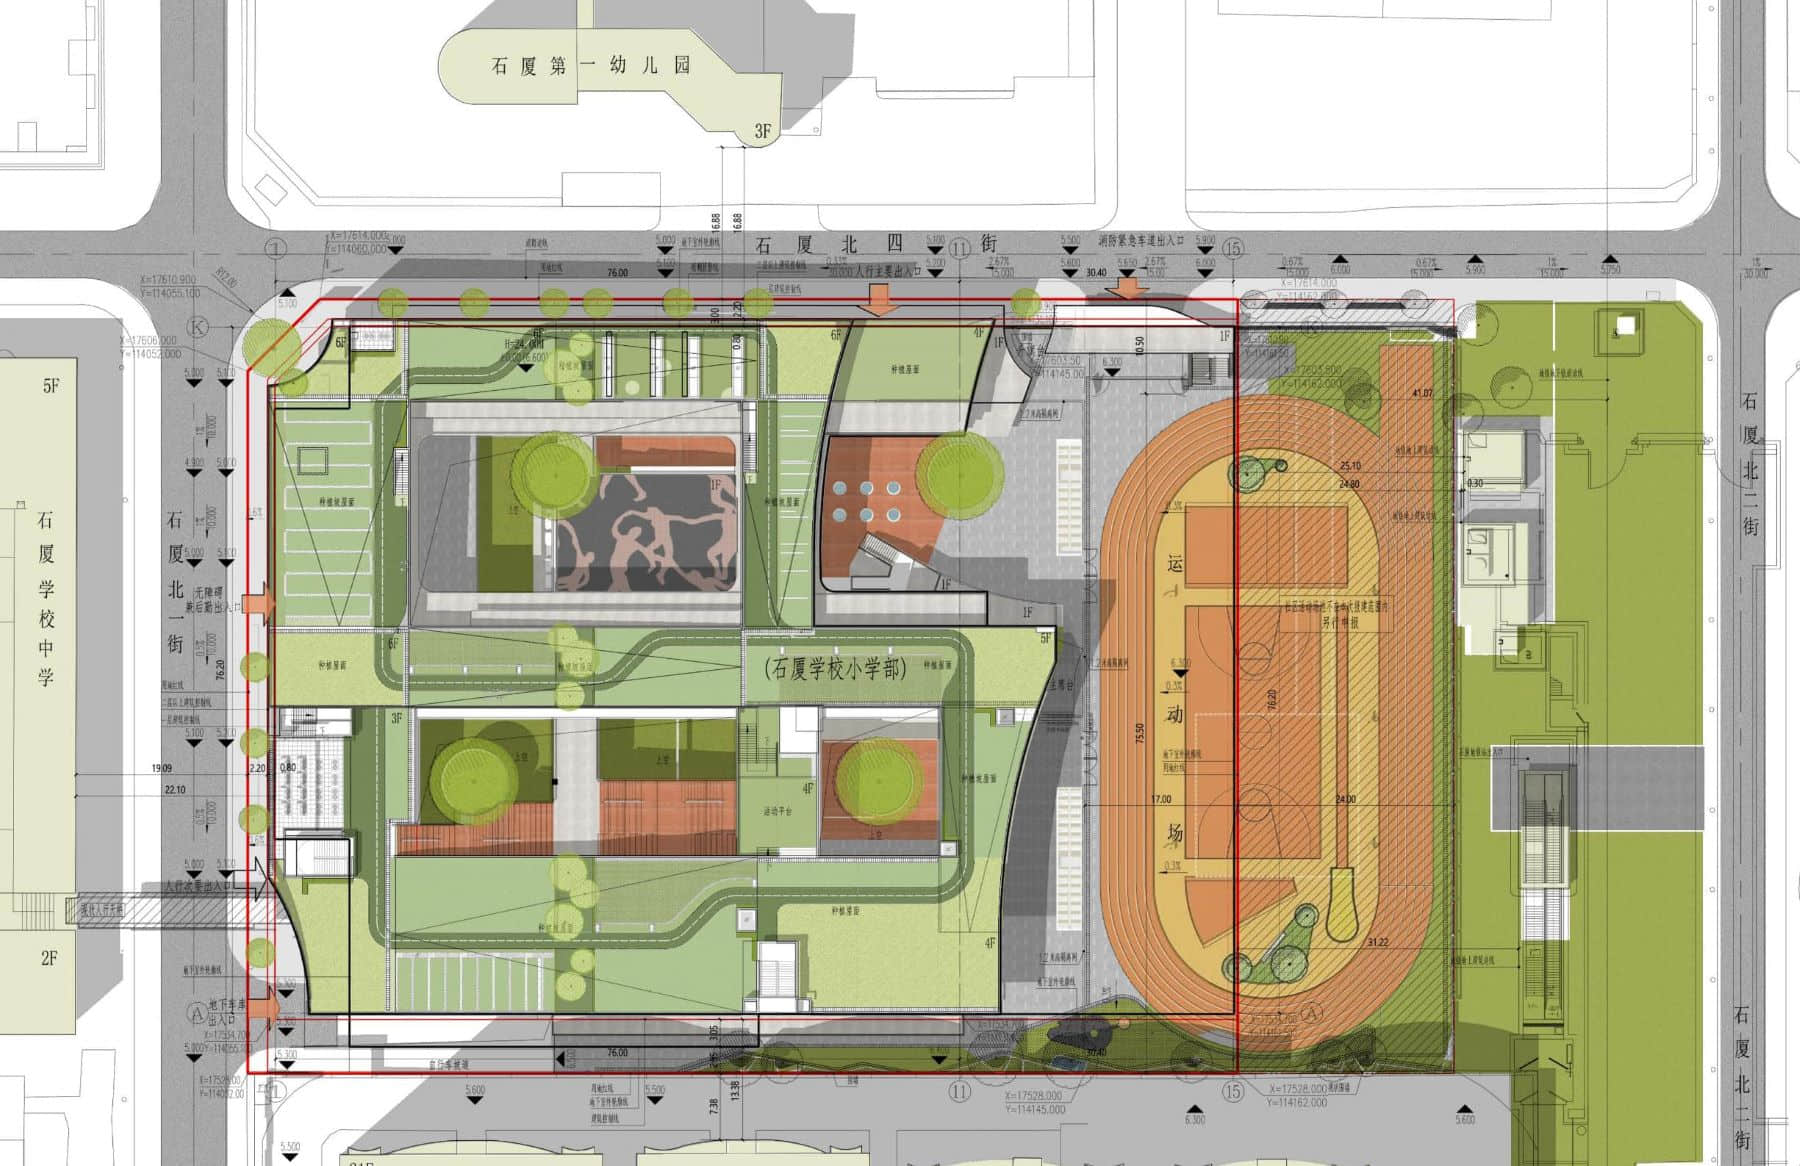 图82、83. 王维仁的石厦小学在概念设计阶段（左），在红线内仅能放下一条60米直跑道；在深化阶段（右），占用东边一部分社区用地，可放下一个150米跑道田径场